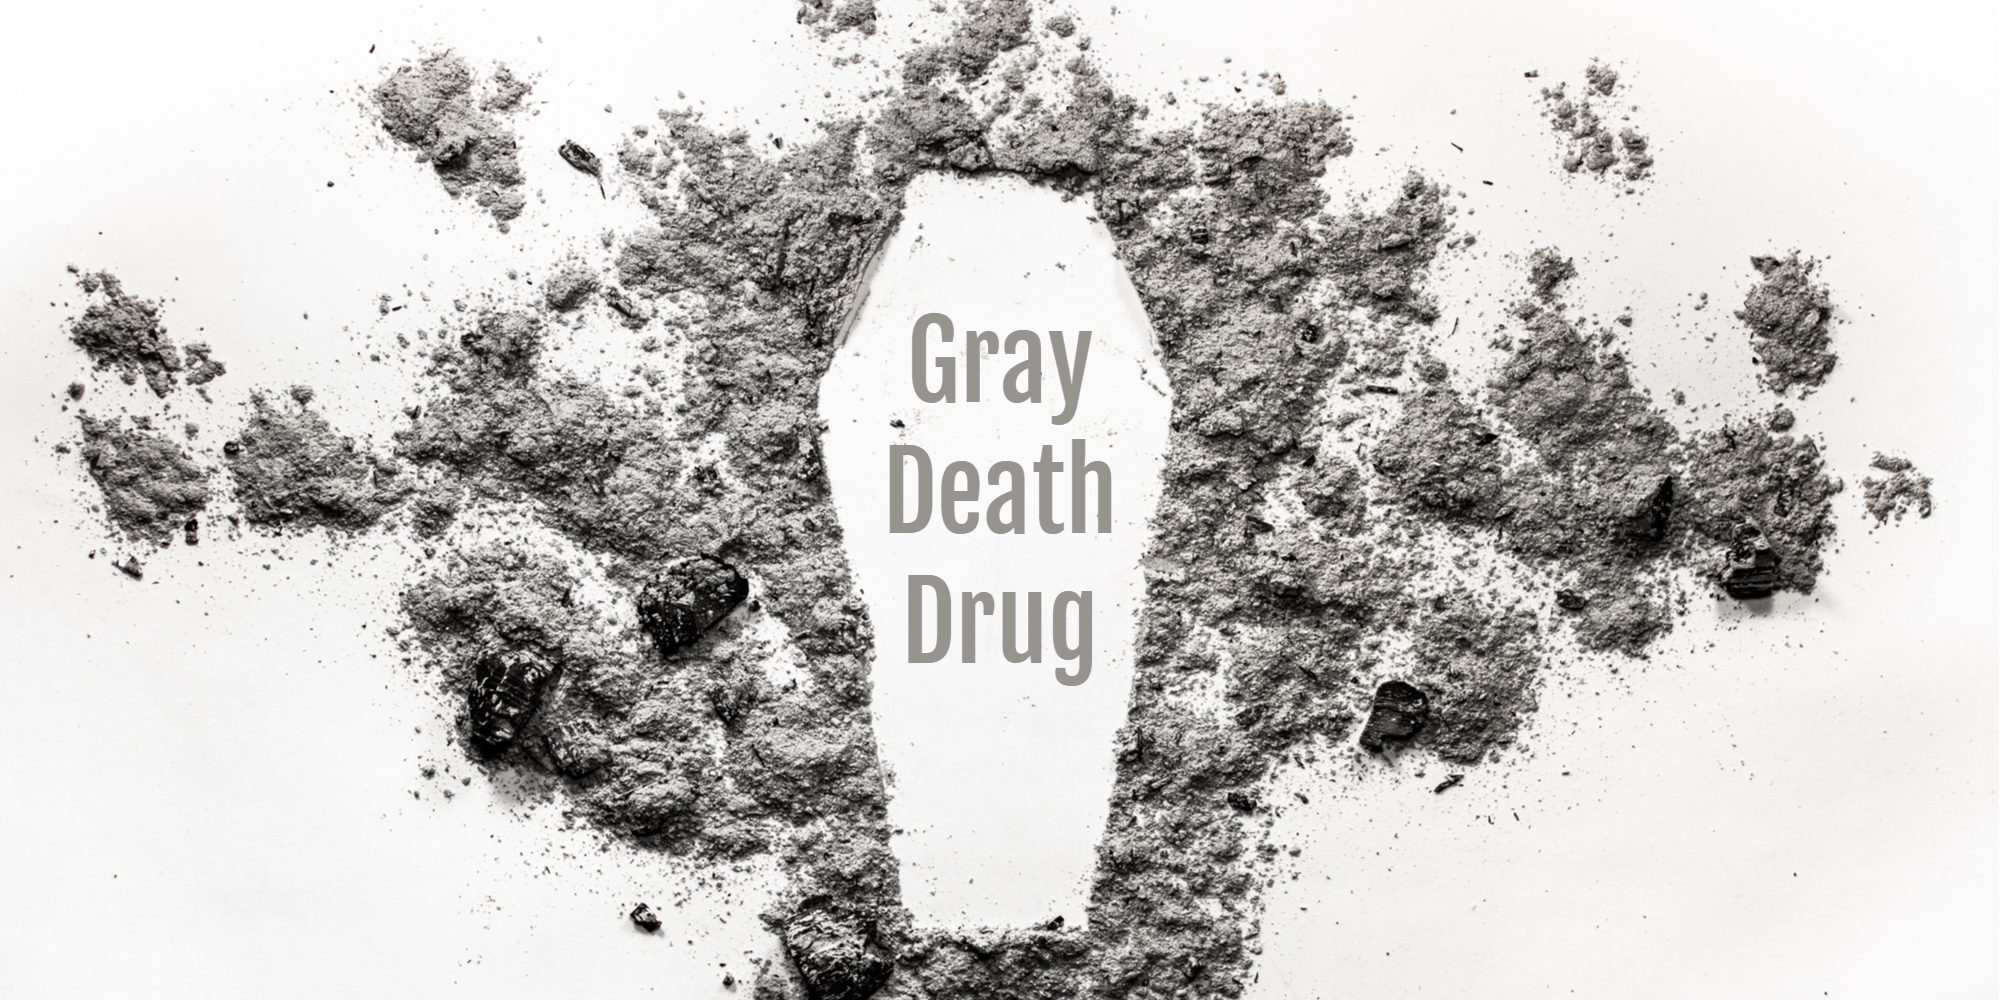 Gray Death Drug: Florida’s New “Super Drug”?